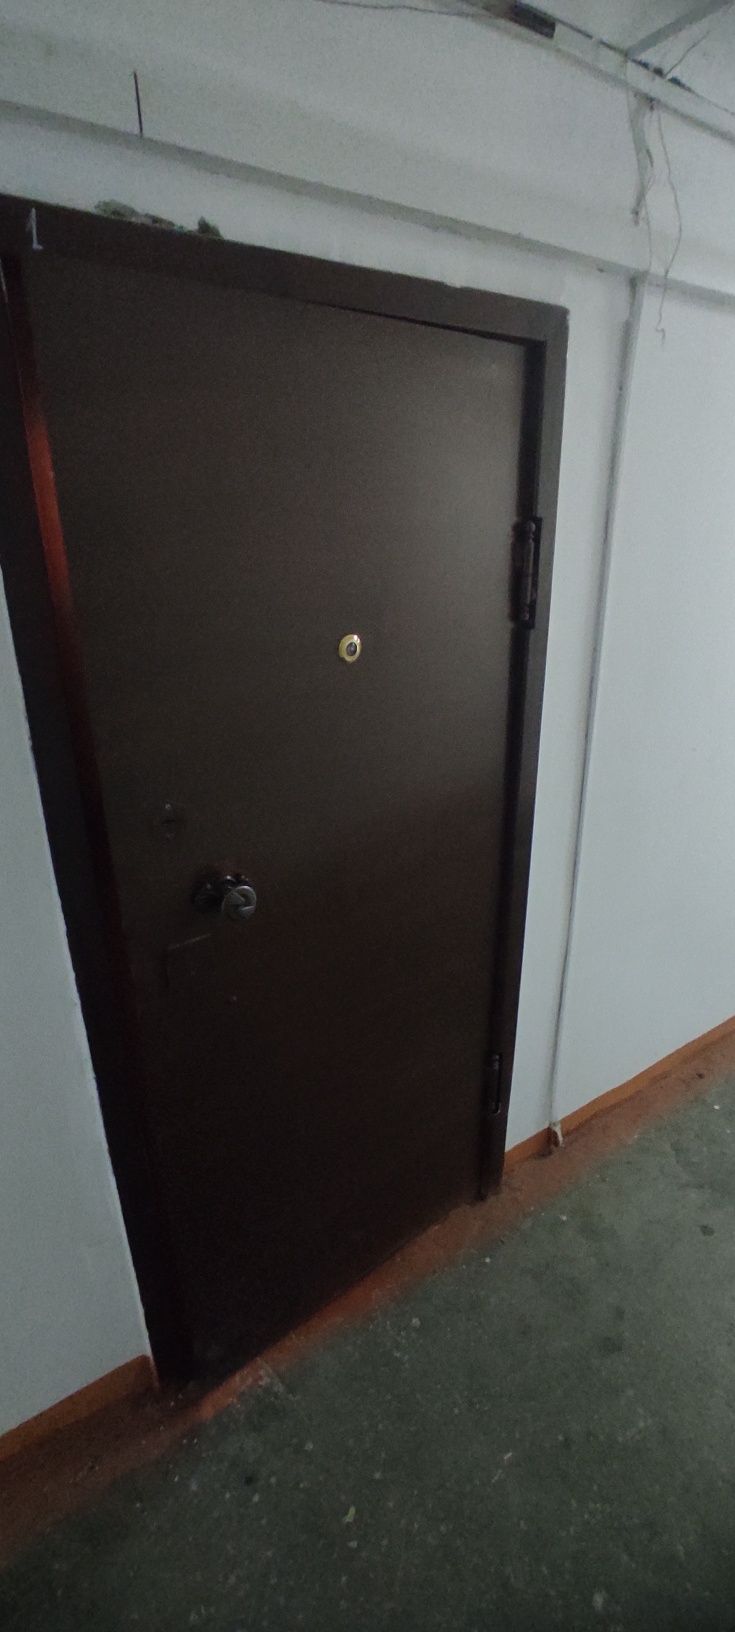 Входная дверь из толстого металла, меньше стандартного размера